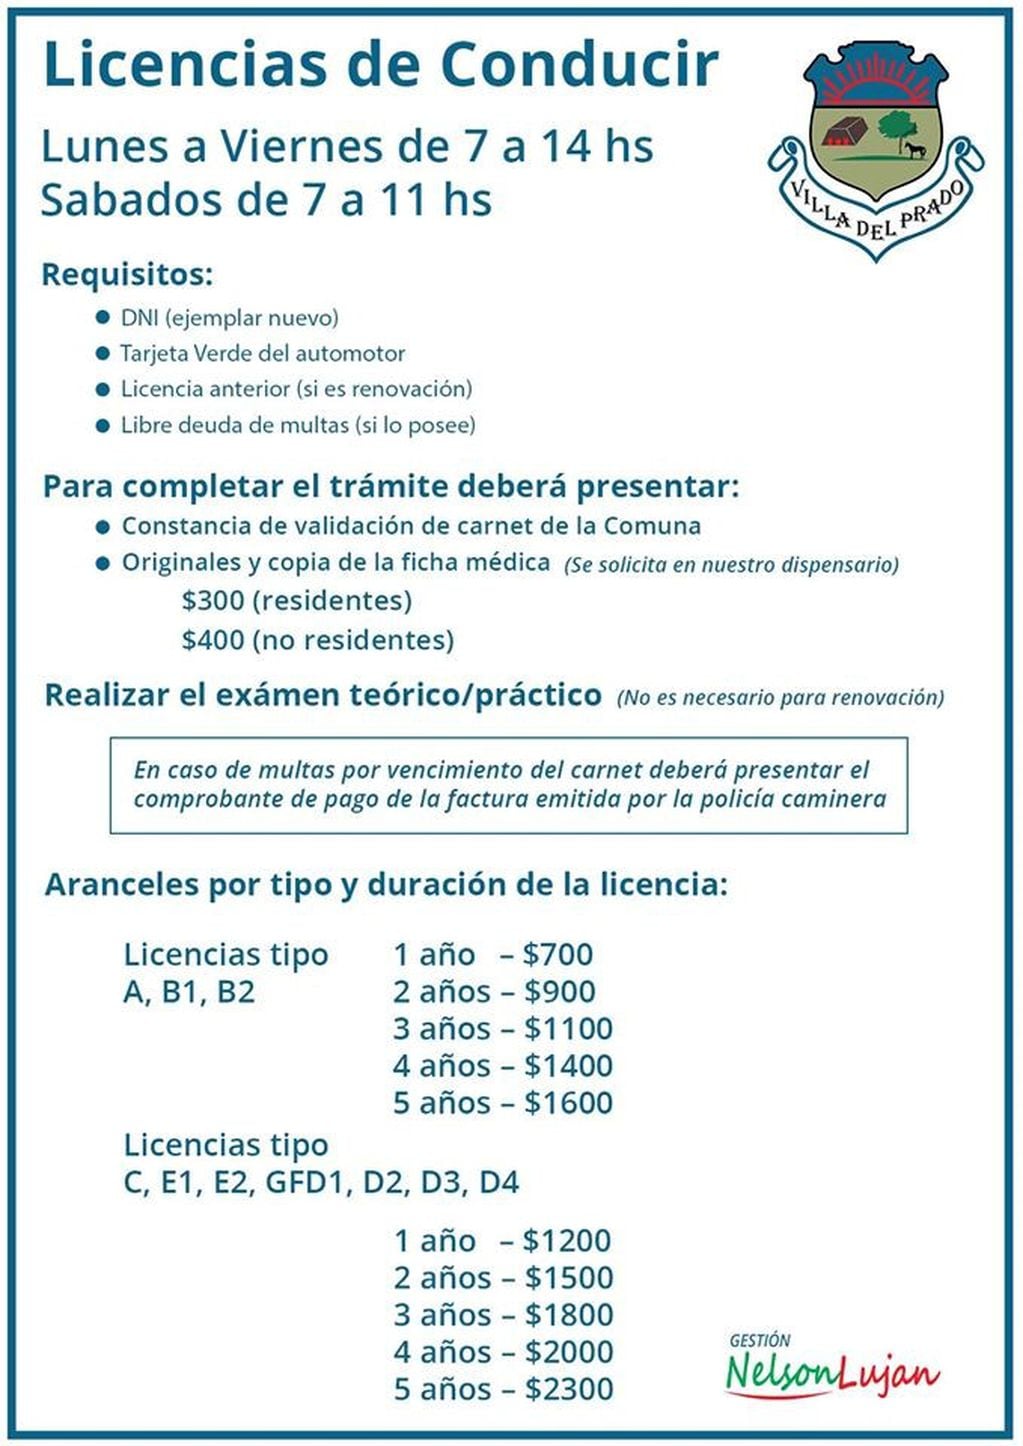 Licencia de conducir en Villa del Prado